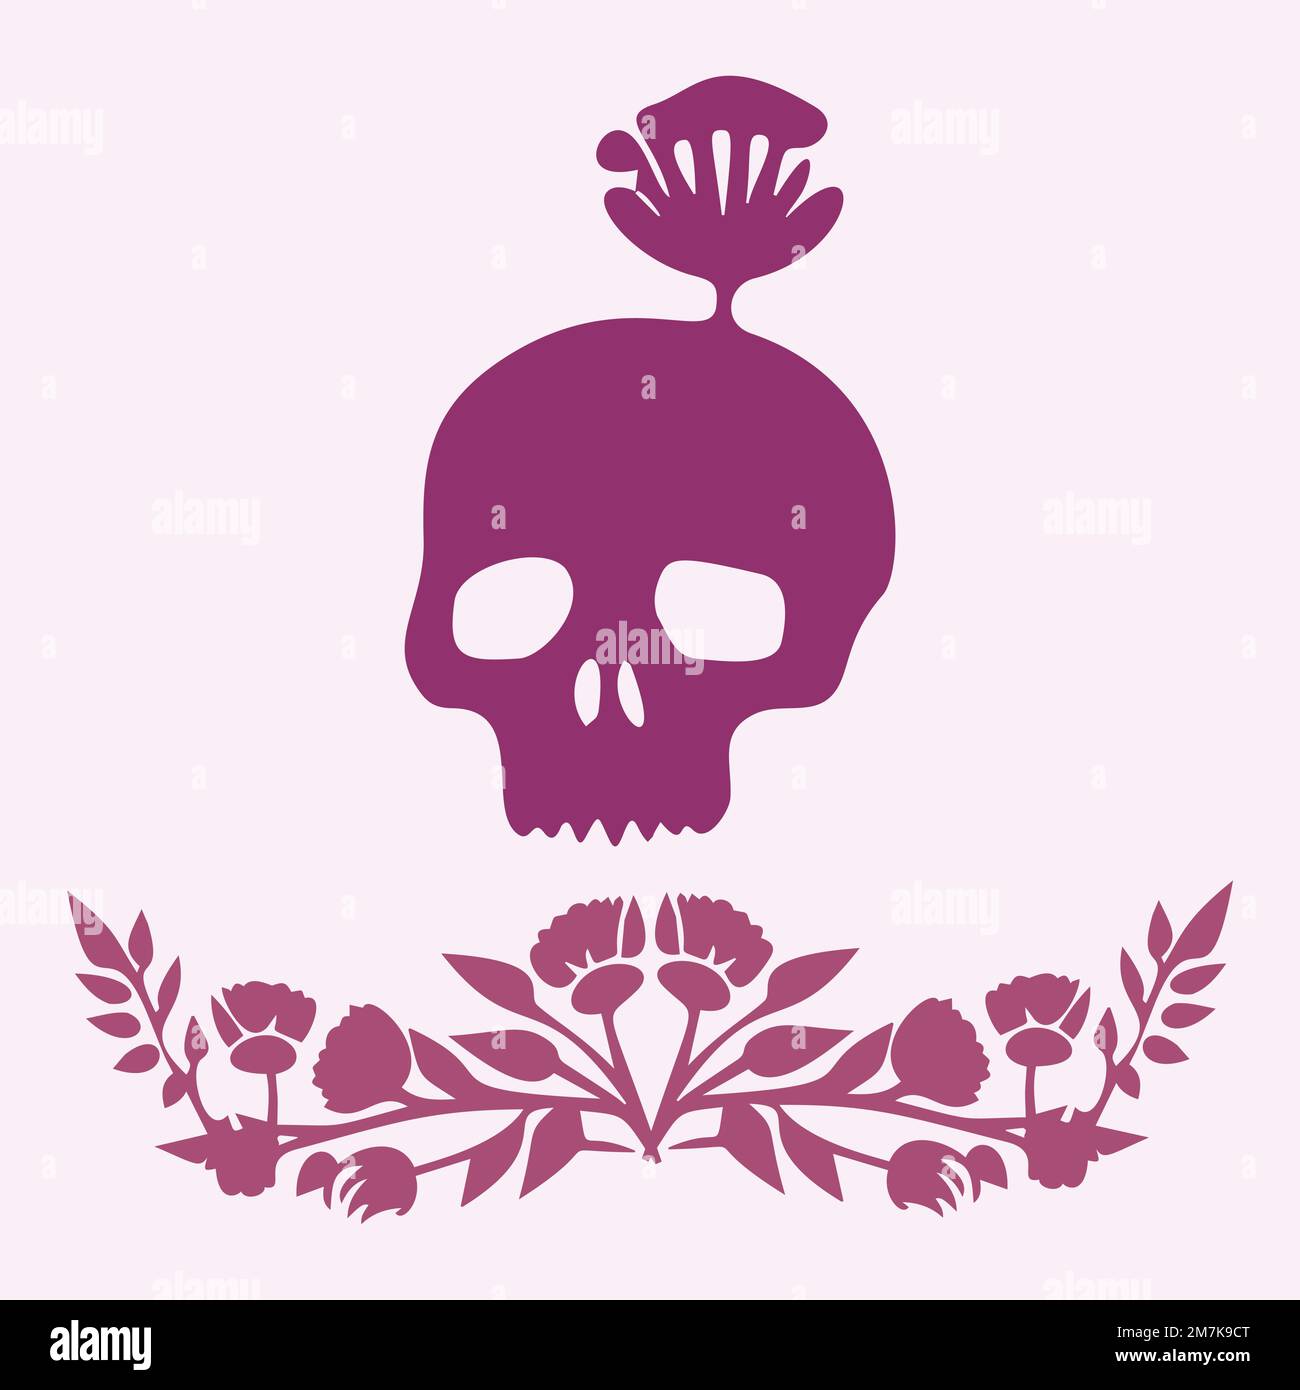 floral skull tattoo